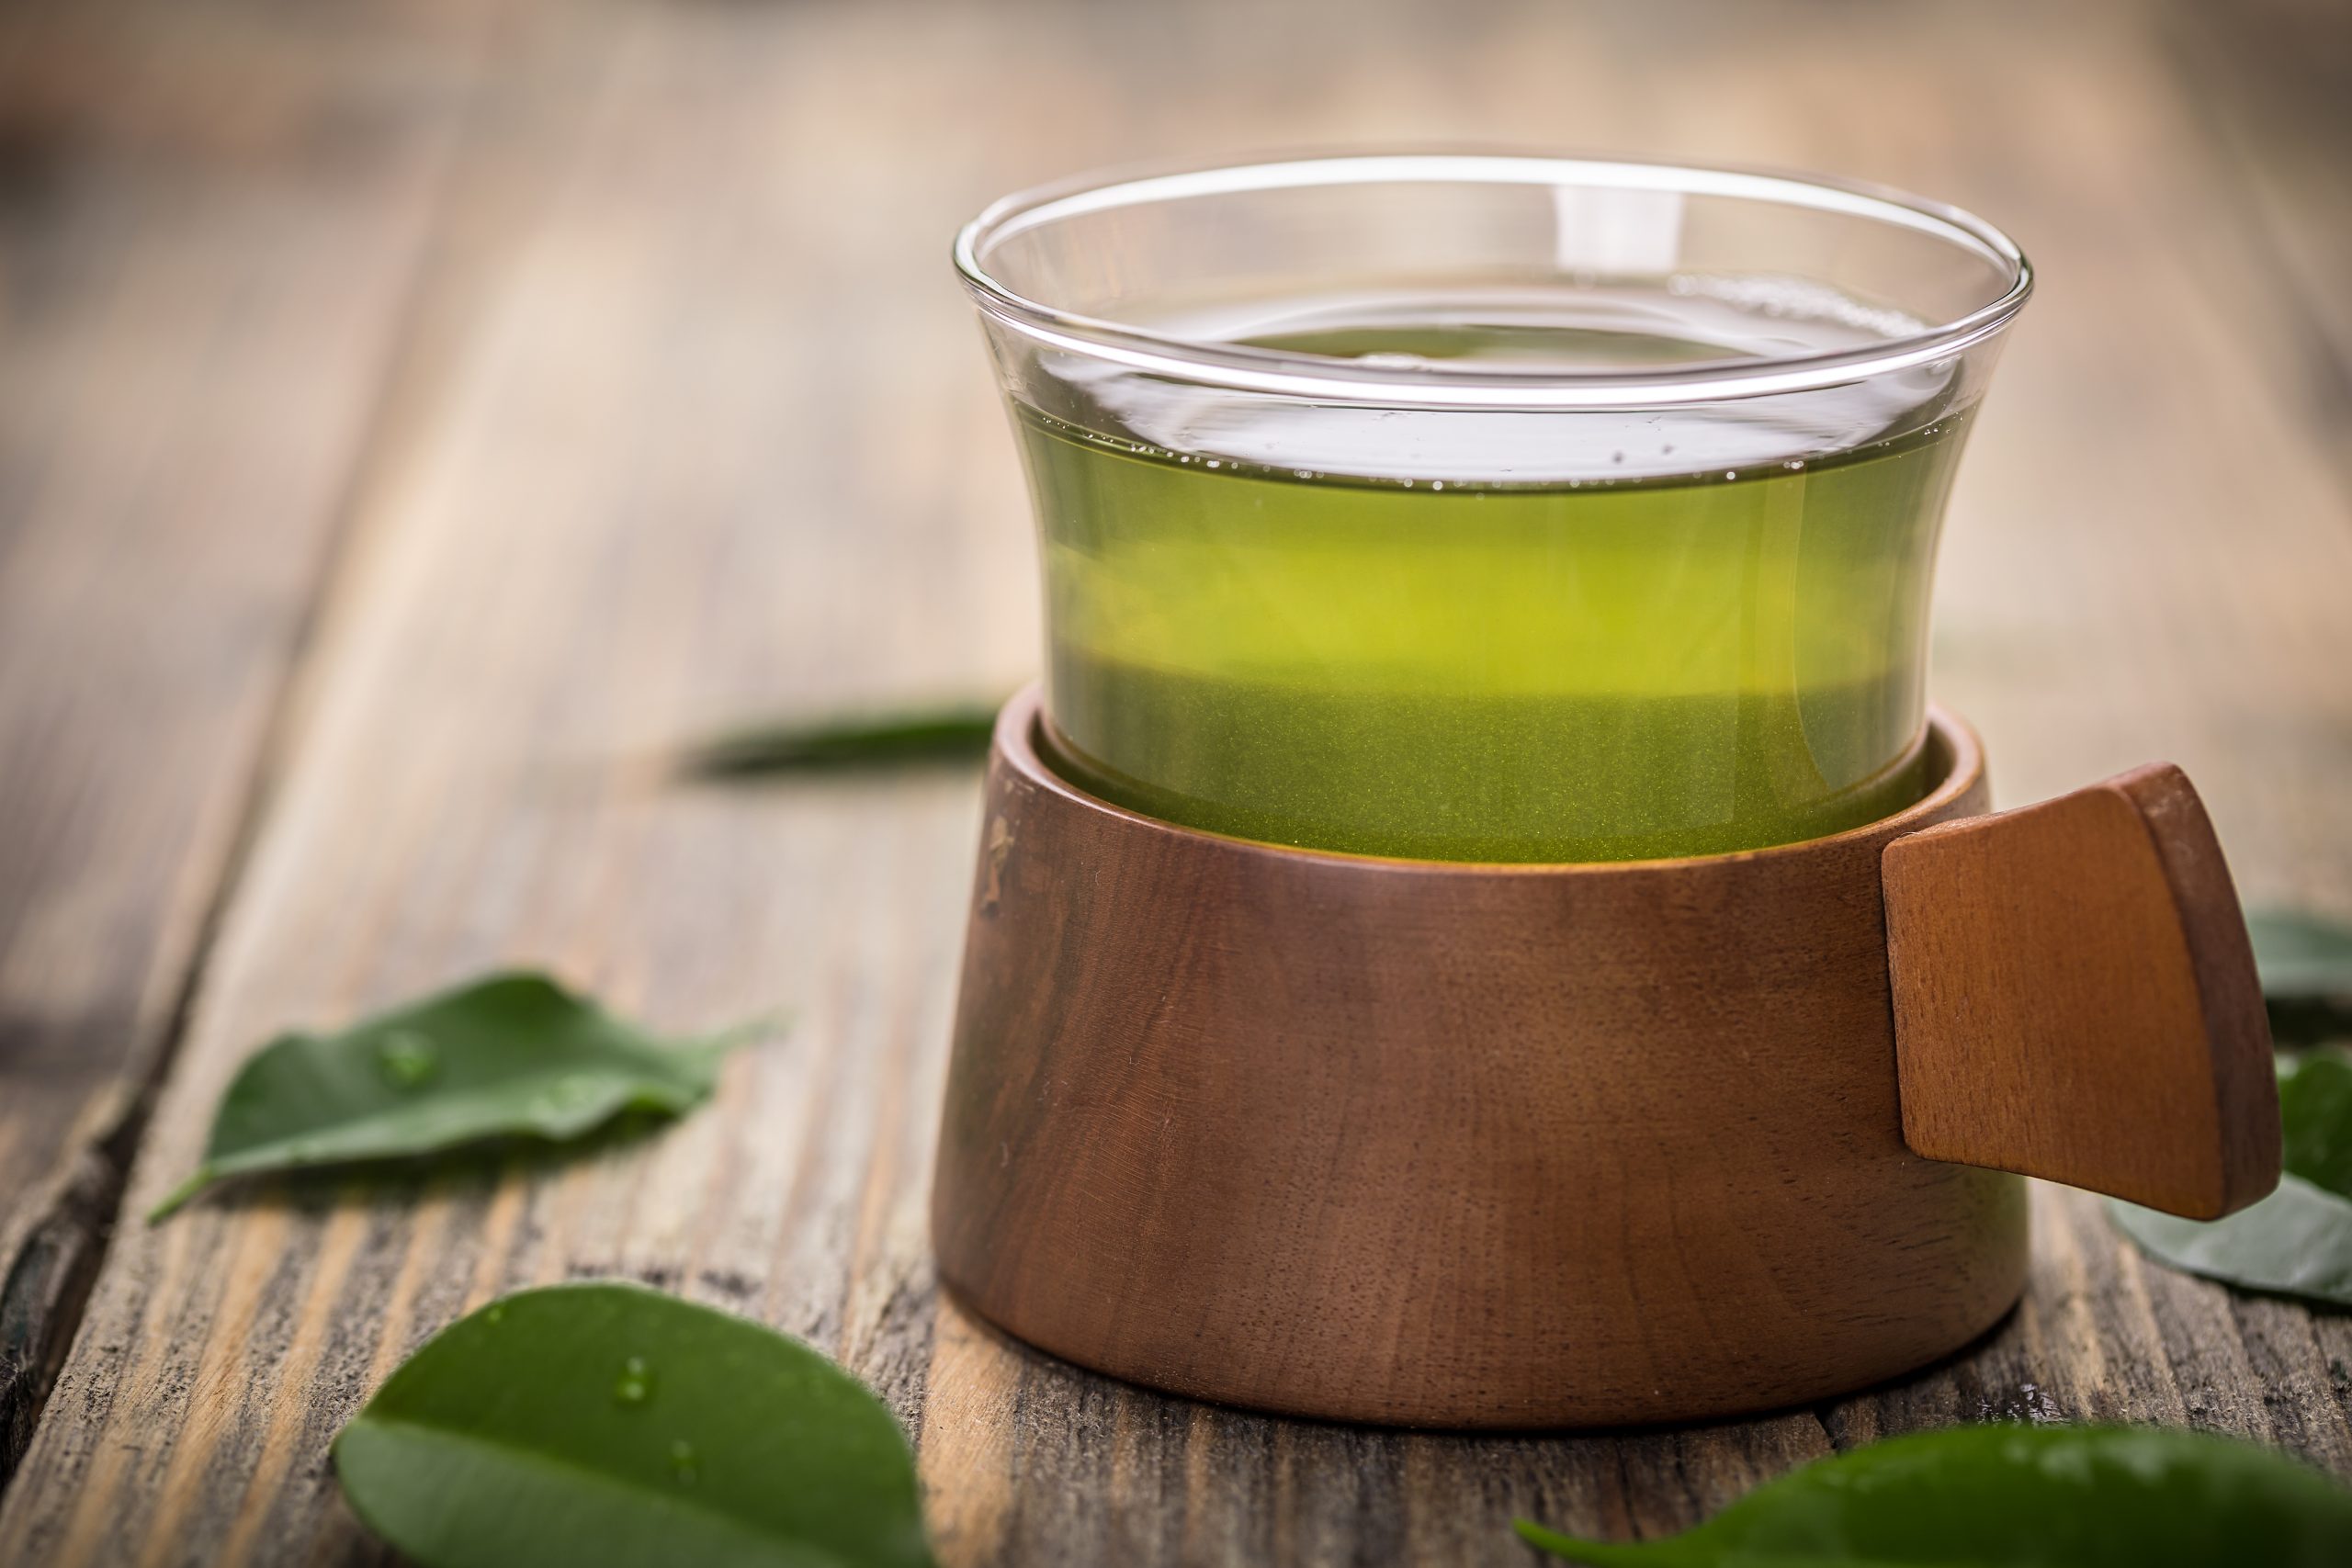 New study: Green tea is not an antioxidant